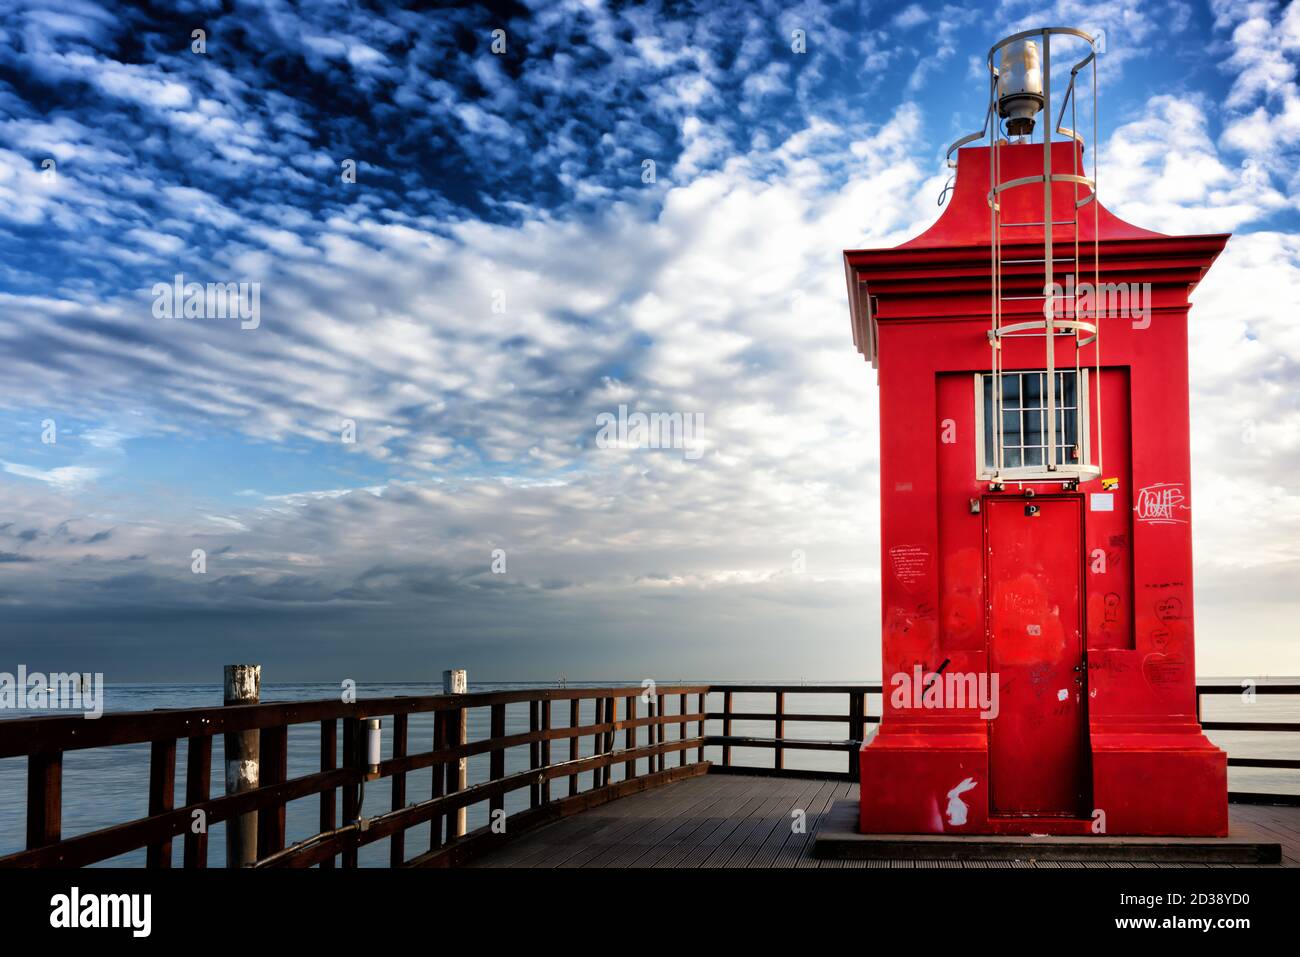 Petit phare rouge sur une jetée en bois sous un ciel spectaculaire. Lignano Sabbiadoro, Friuli Venezia Giulia, Italie. Banque D'Images